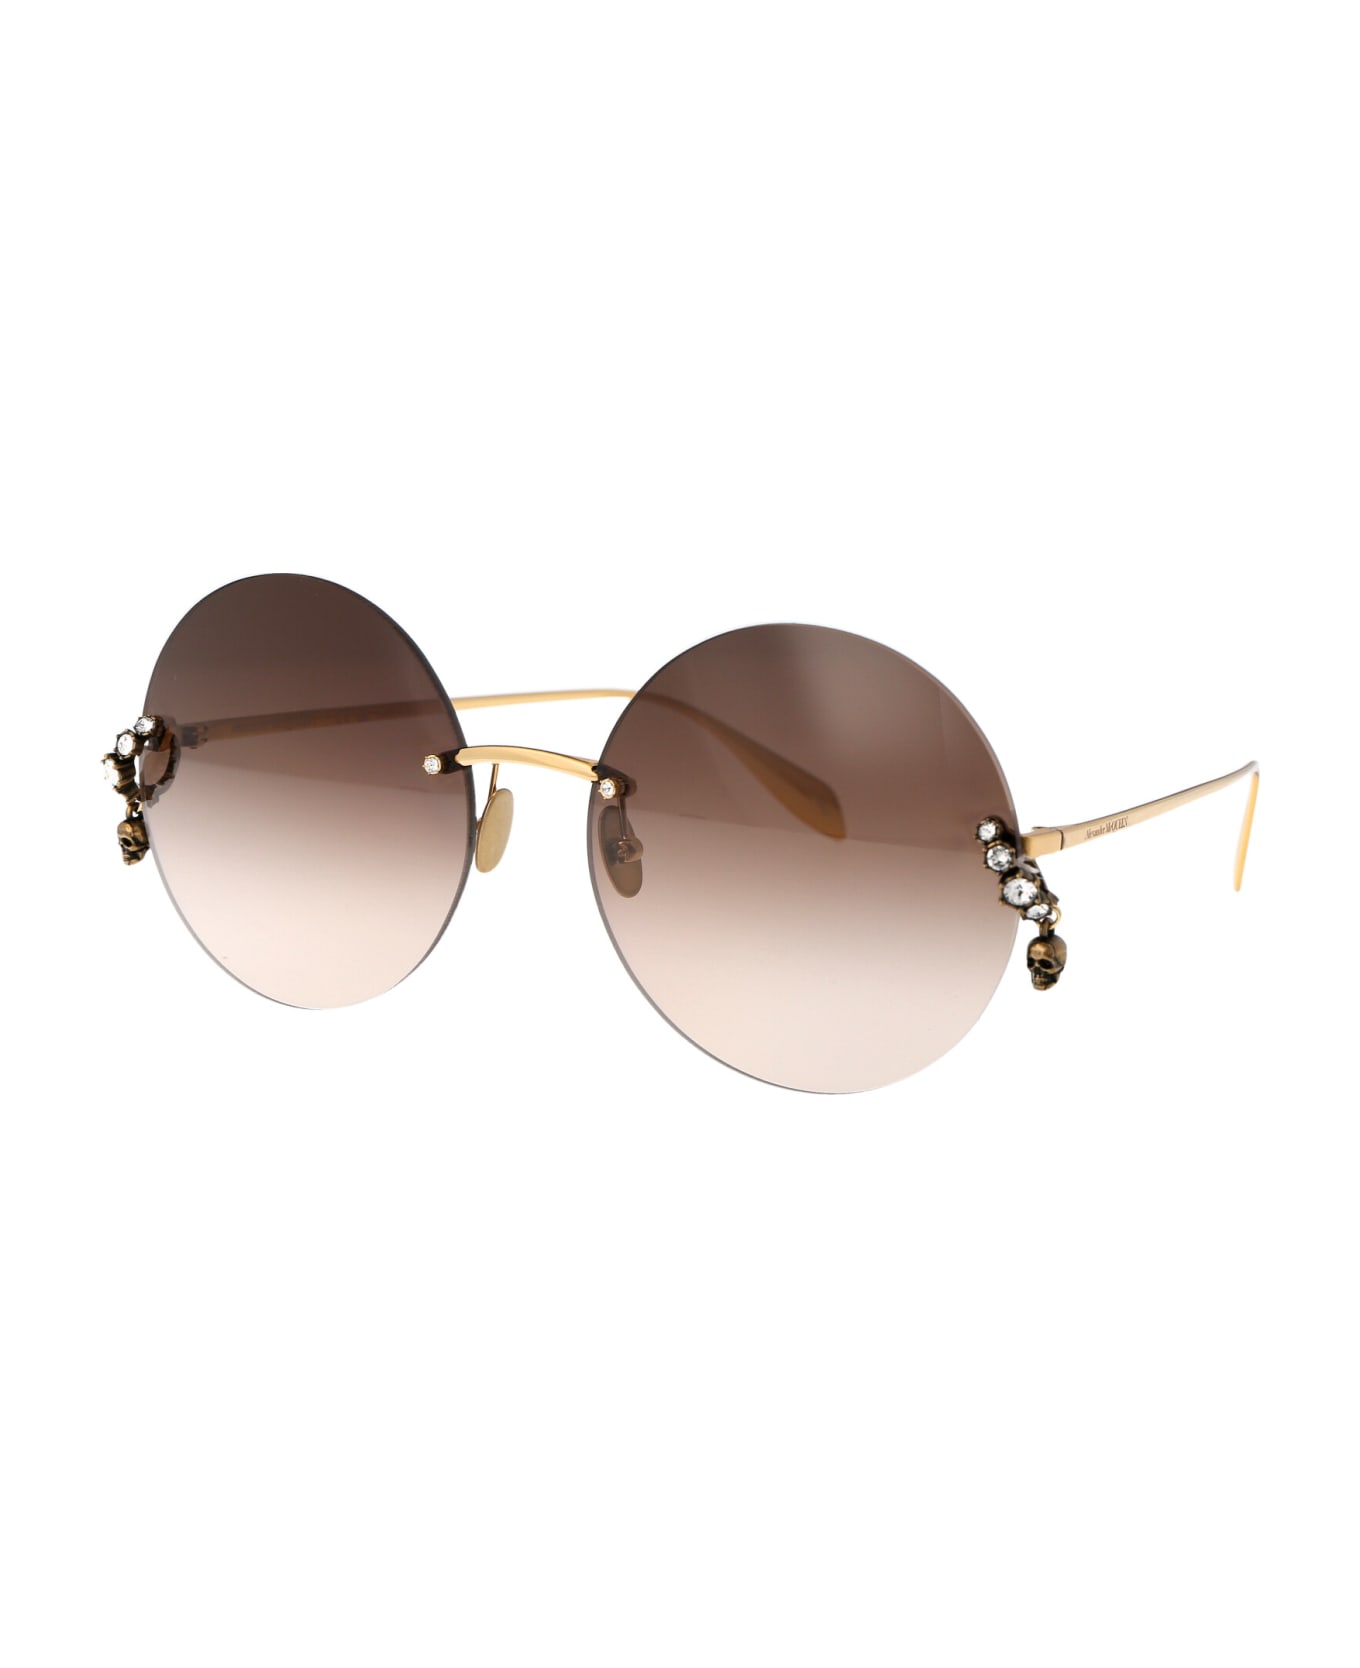 Alexander McQueen Eyewear Am0418s Sunglasses - 002 GOLD GOLD BROWN サングラス